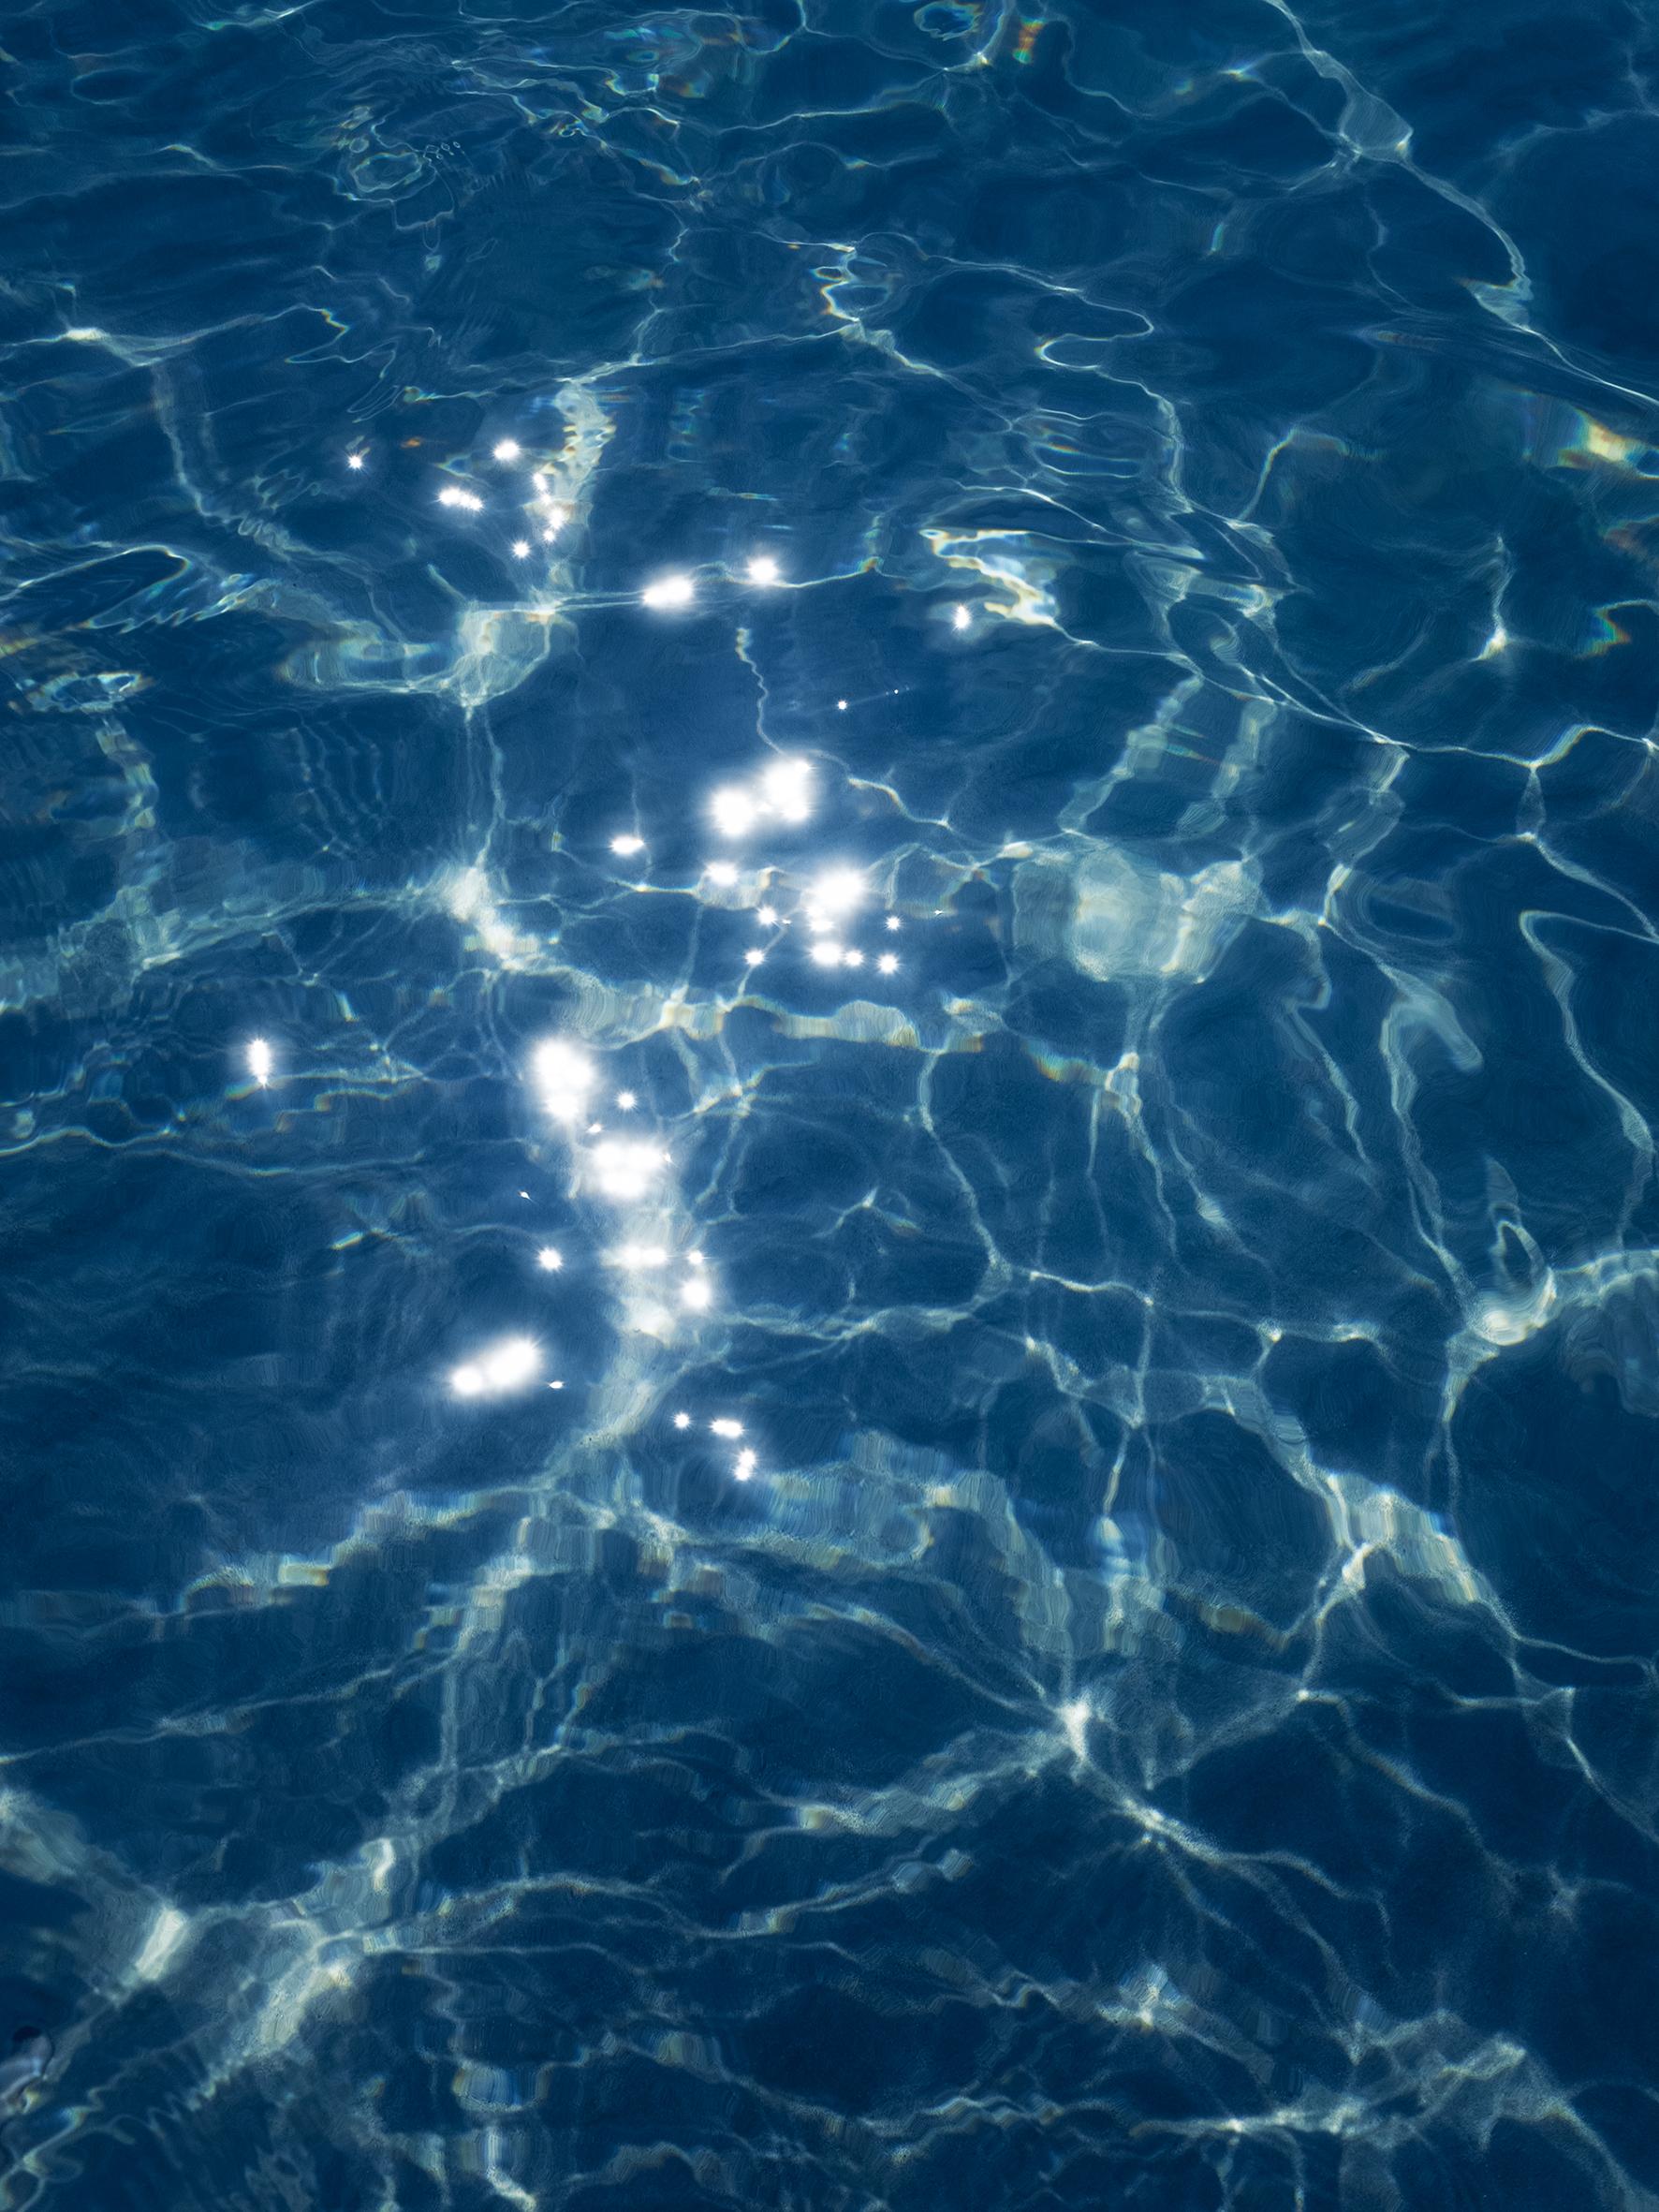 Wasser- und Wasserlichtfleckenfotografie, limitierte Auflage von 10 Stück